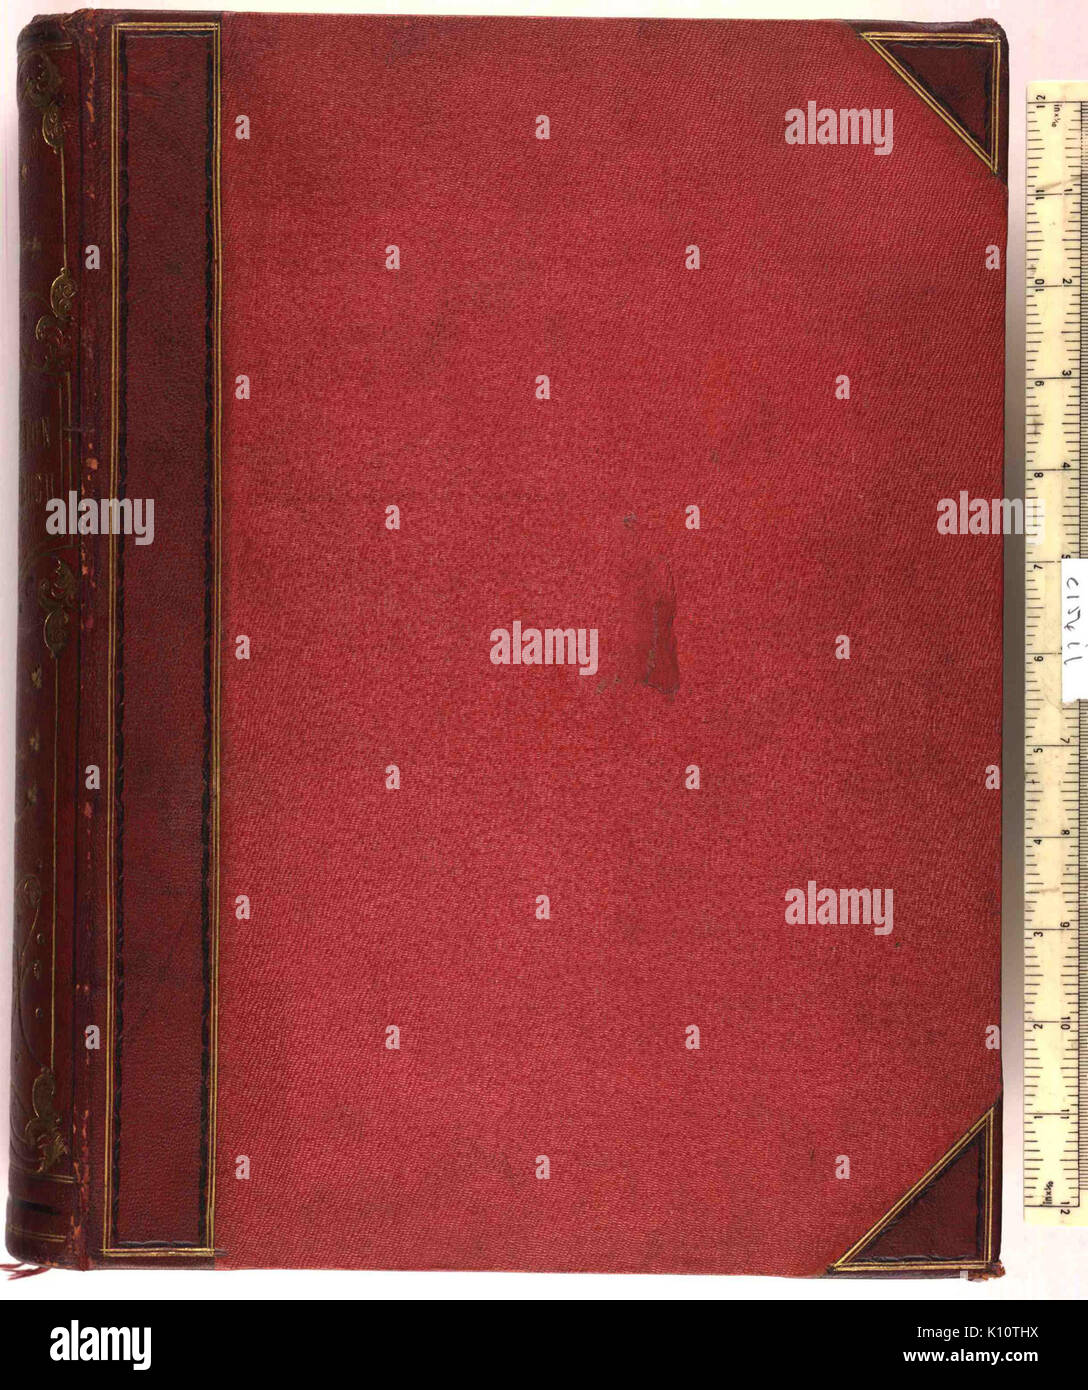 Architektonisches Skizzen Buch   Upper cover (c154i1) Stock Photo